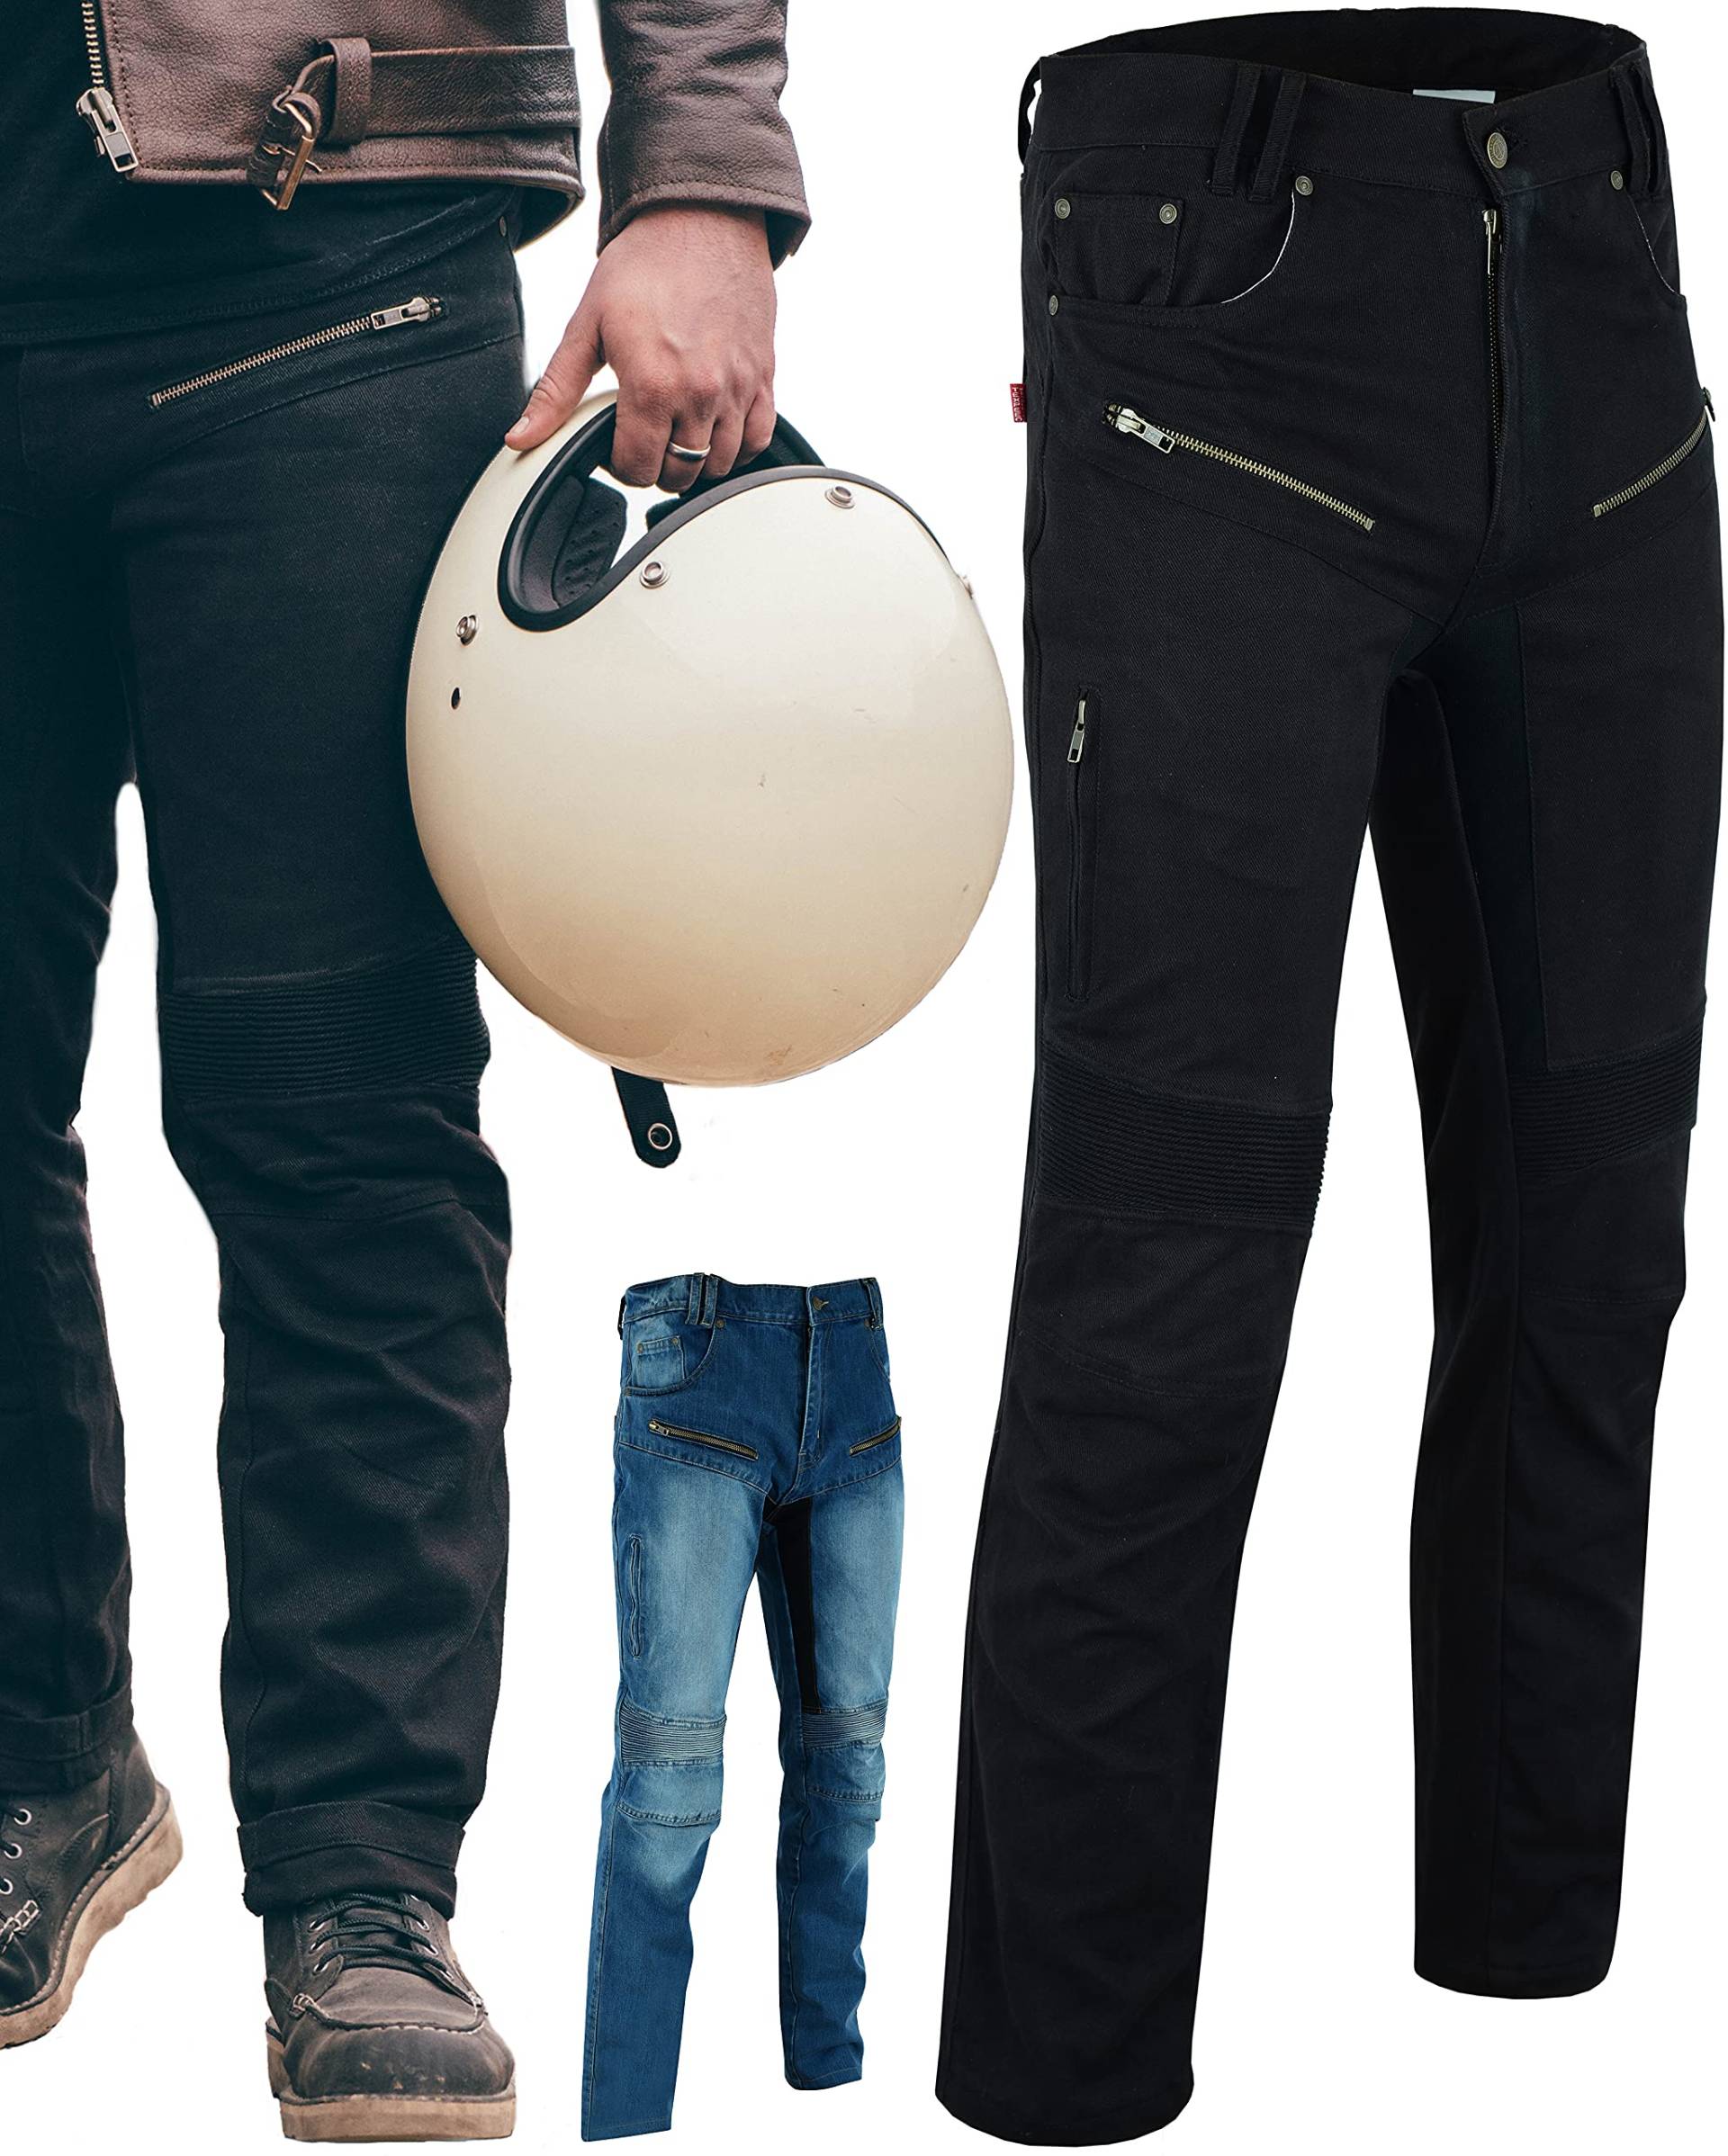 Texpeed Motorradhose mit Protektoren - Herren schwarz Motorrad schützende Jeans - Tapered Fit - Rüstung enthalten (EN 1621-1) - Schwarz: 4XL Taille/Kurz Bein von Texpeed